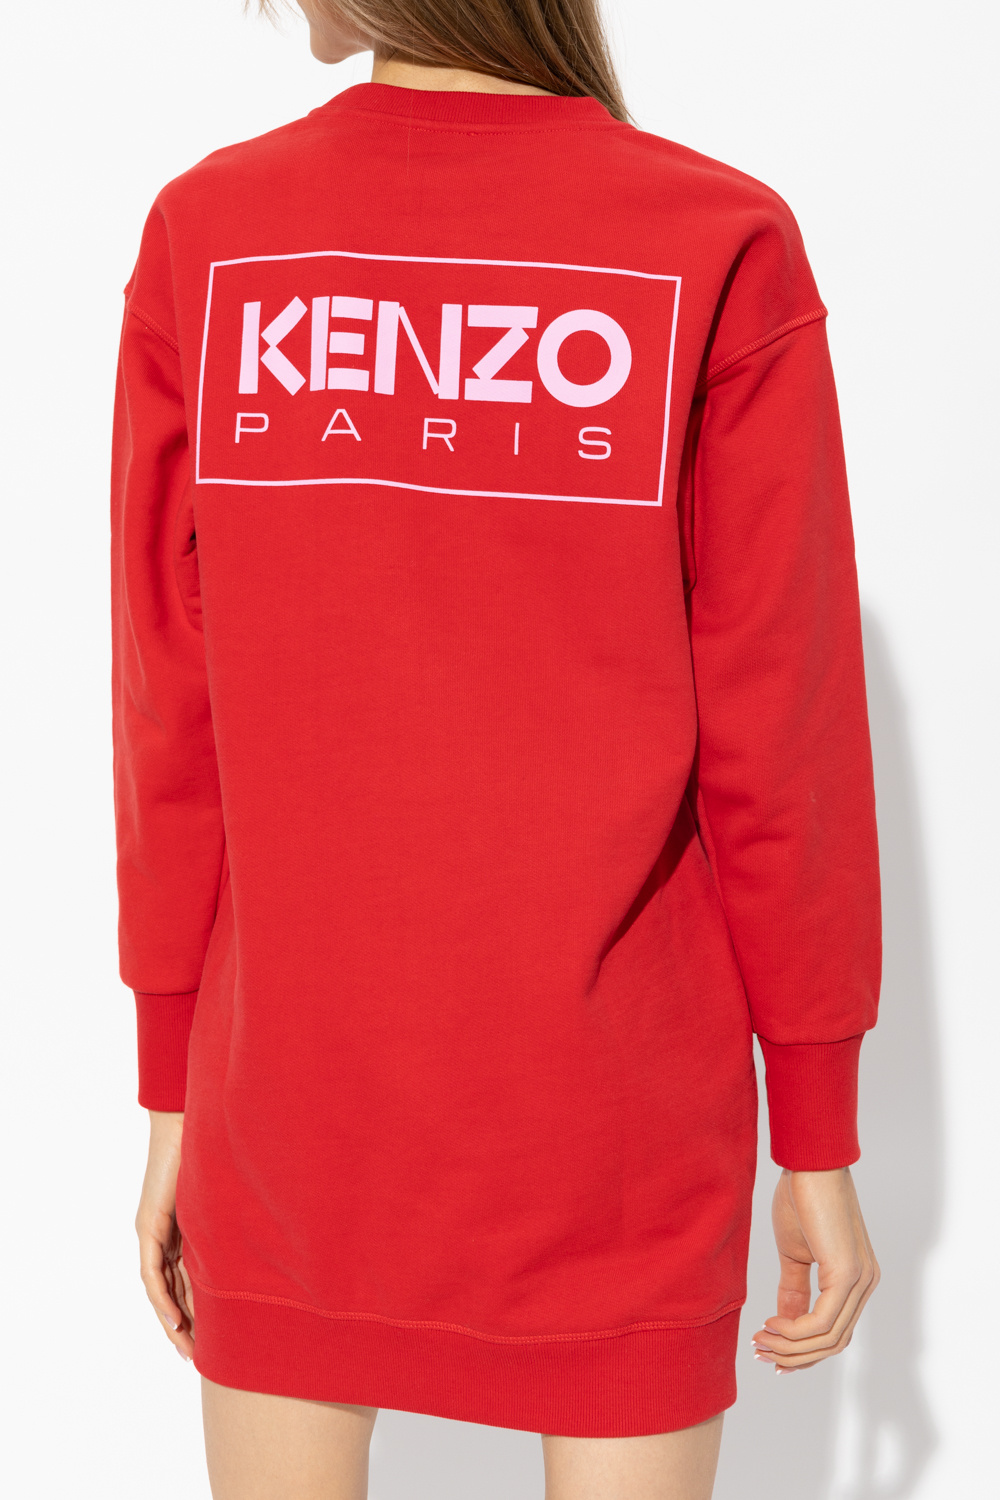 Kenzo denim dress with logo